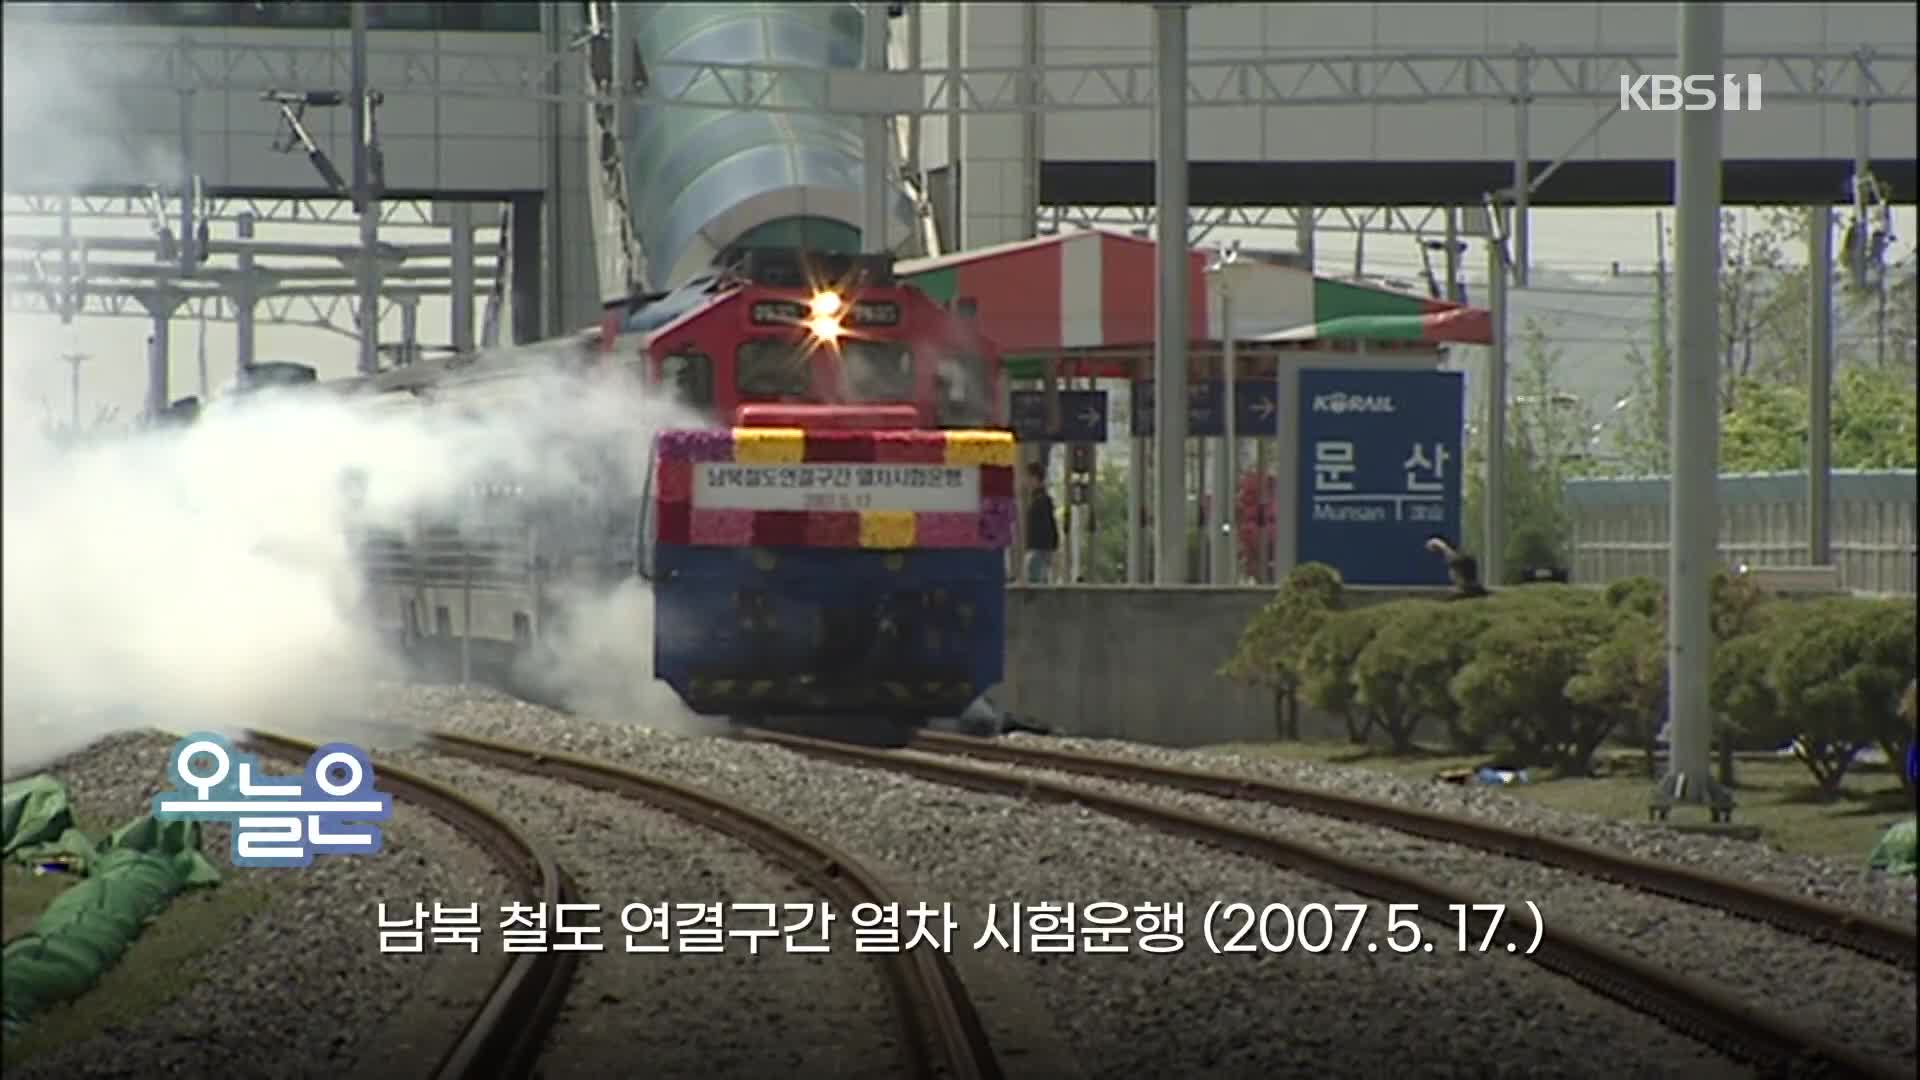 [오늘은] 남북 철도 연결구간 열차 시험운행 (2007.5.17.)